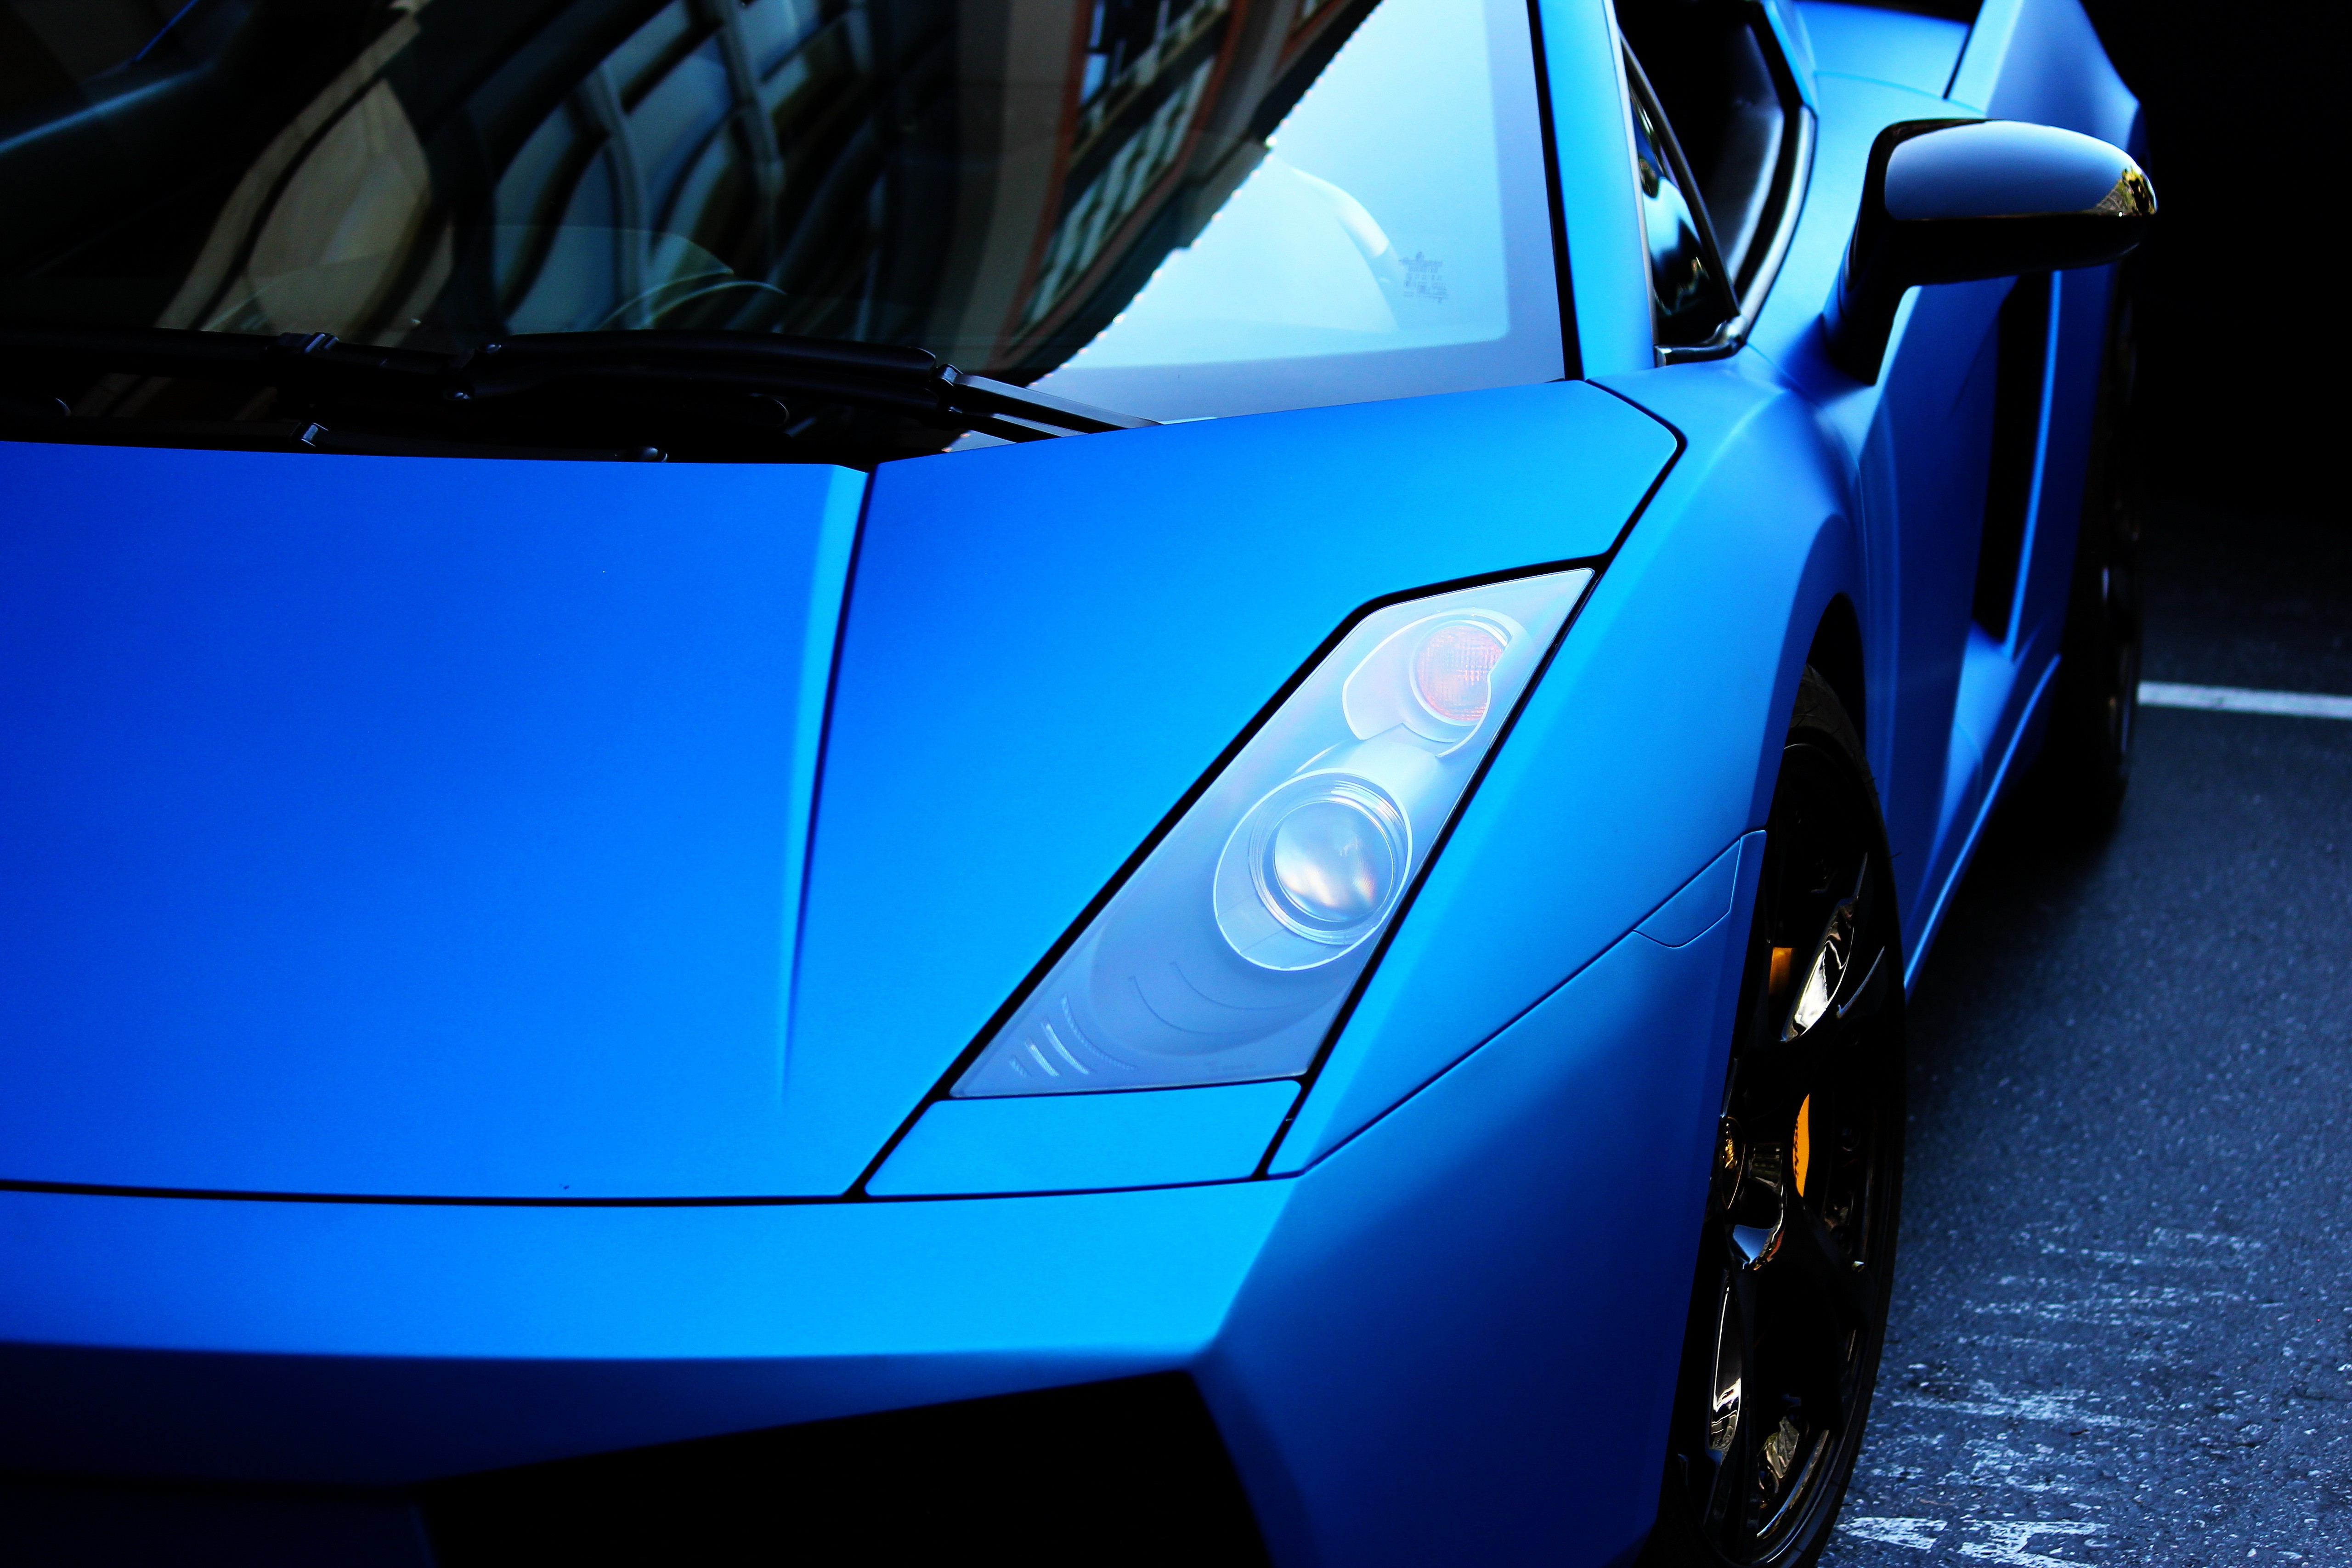 General 5120x3413 car blue cars blue Lamborghini Gallardo supercars headlights vehicle Lamborghini